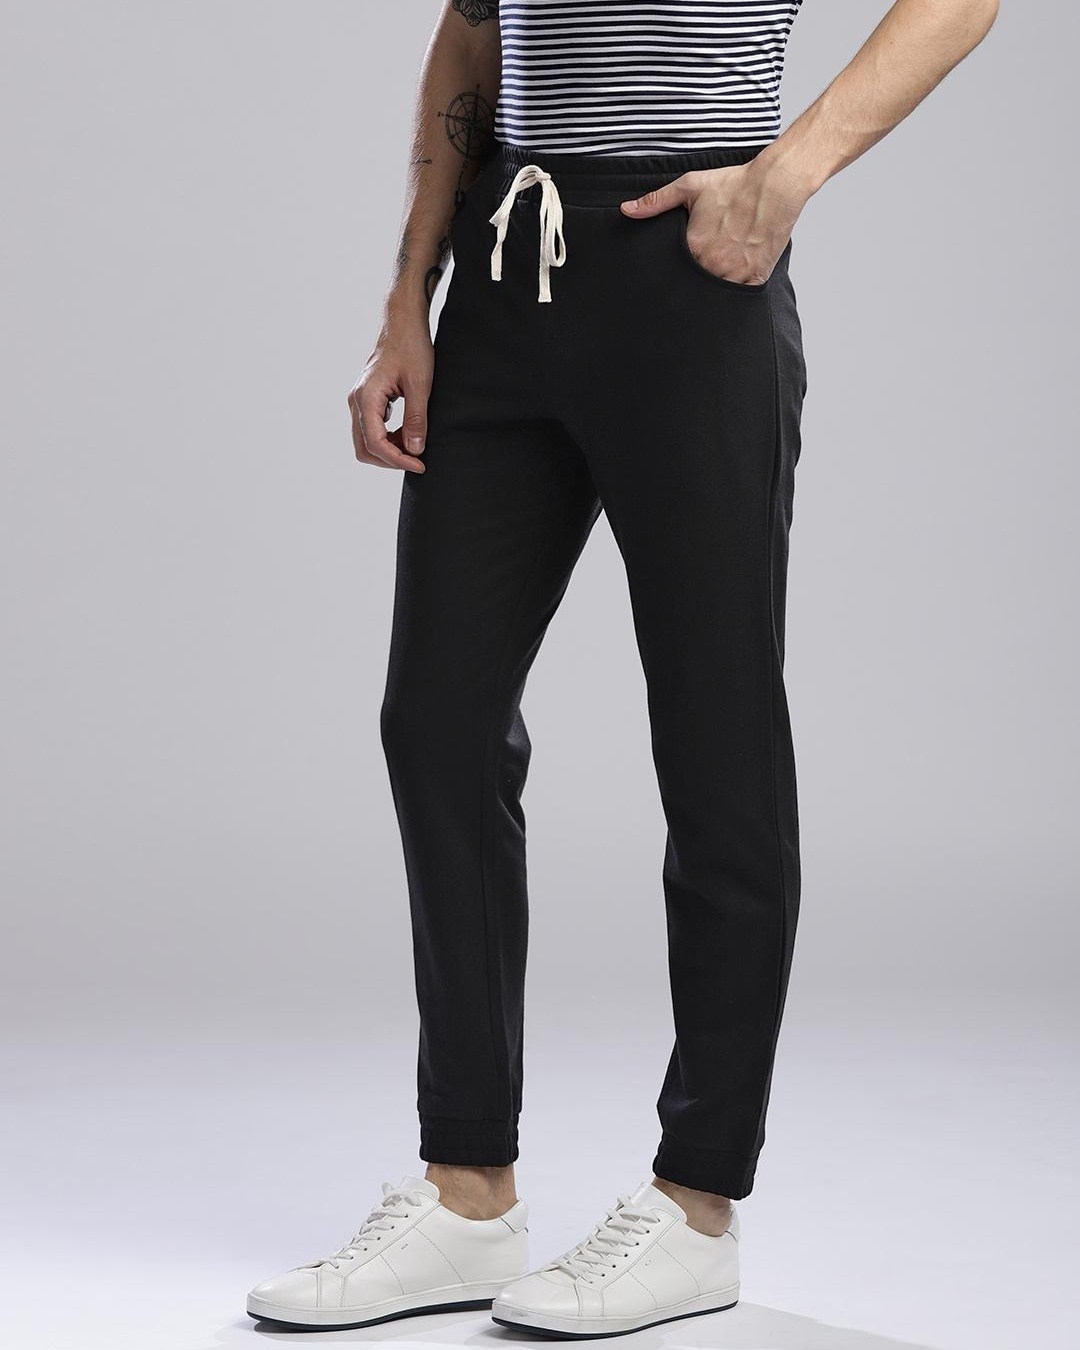 Buy Men's Black Slim Fit Joggers for Men Black Online at Bewakoof